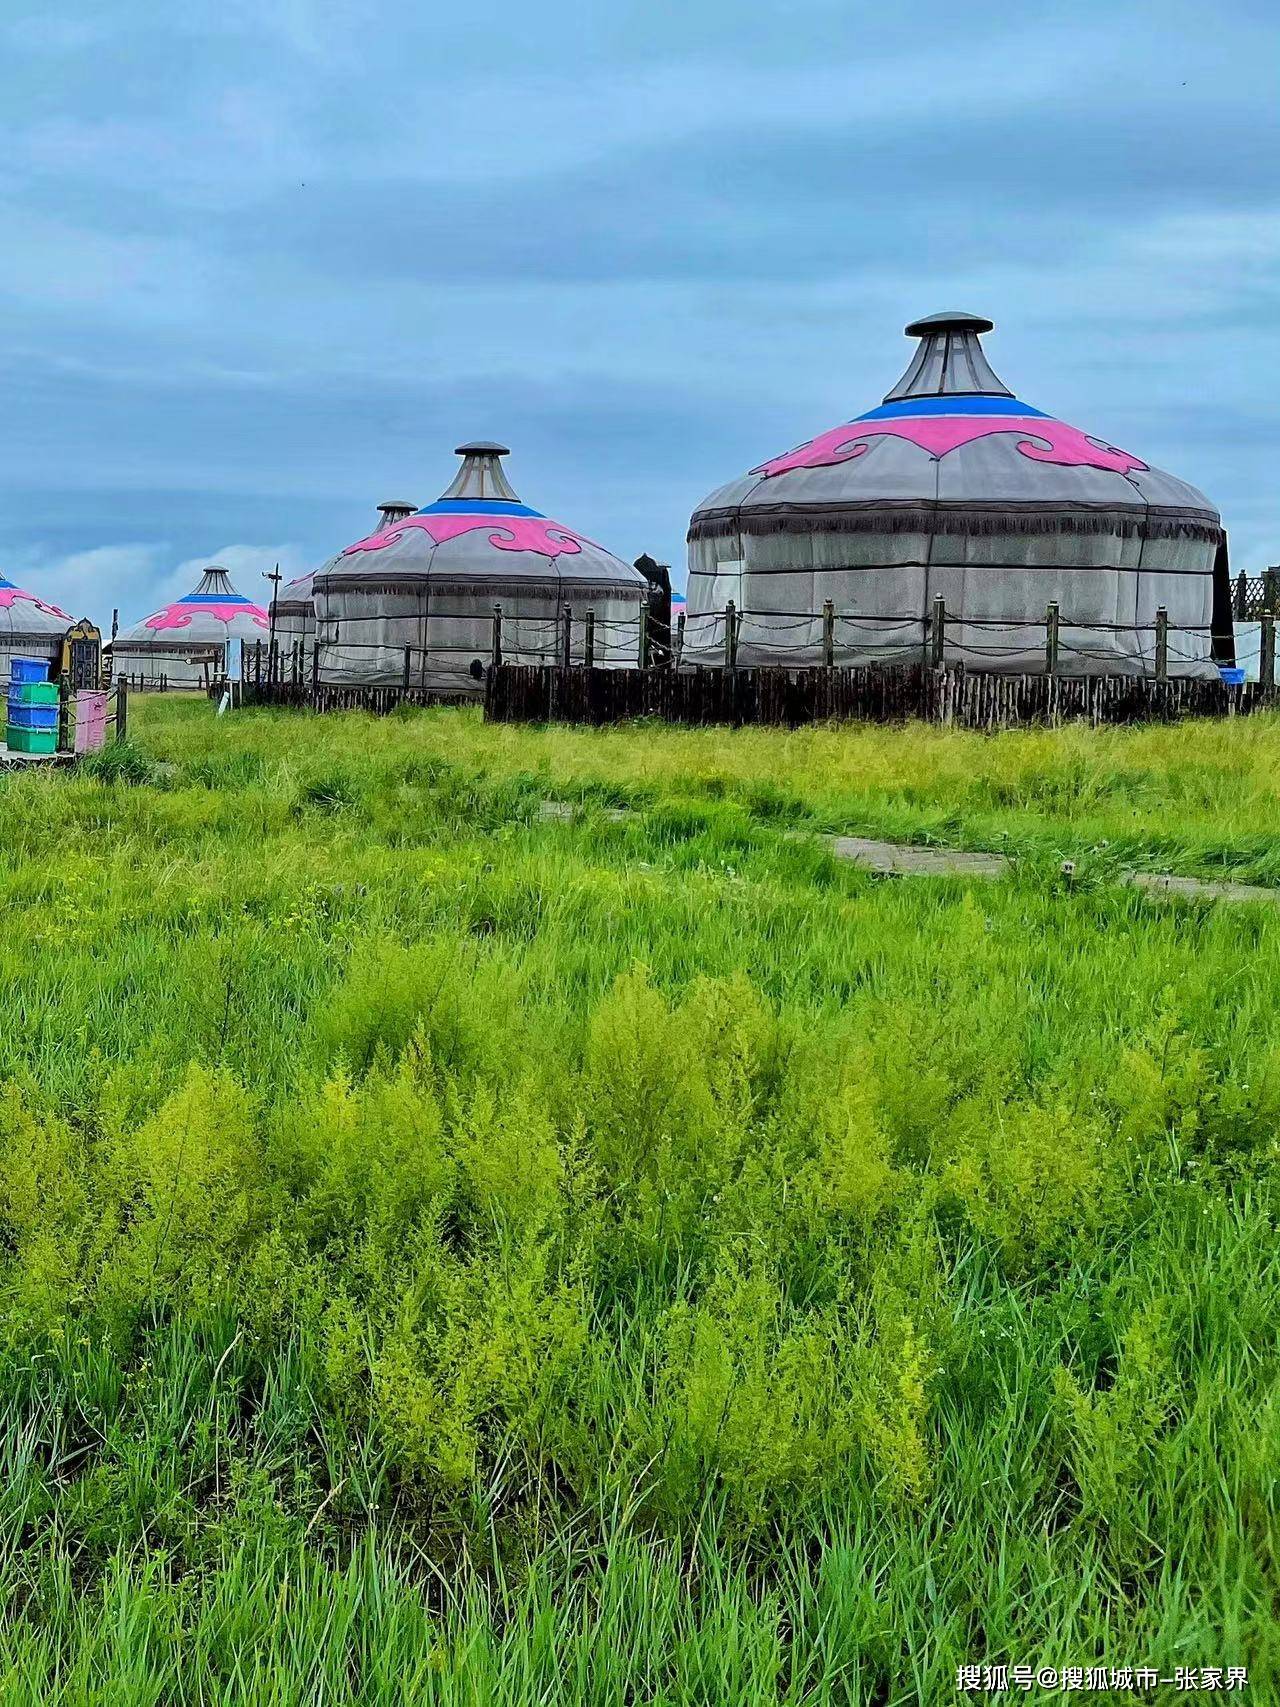 内蒙古草原有几个大草原,内蒙古草原介绍以及美食推荐,看完不迷路